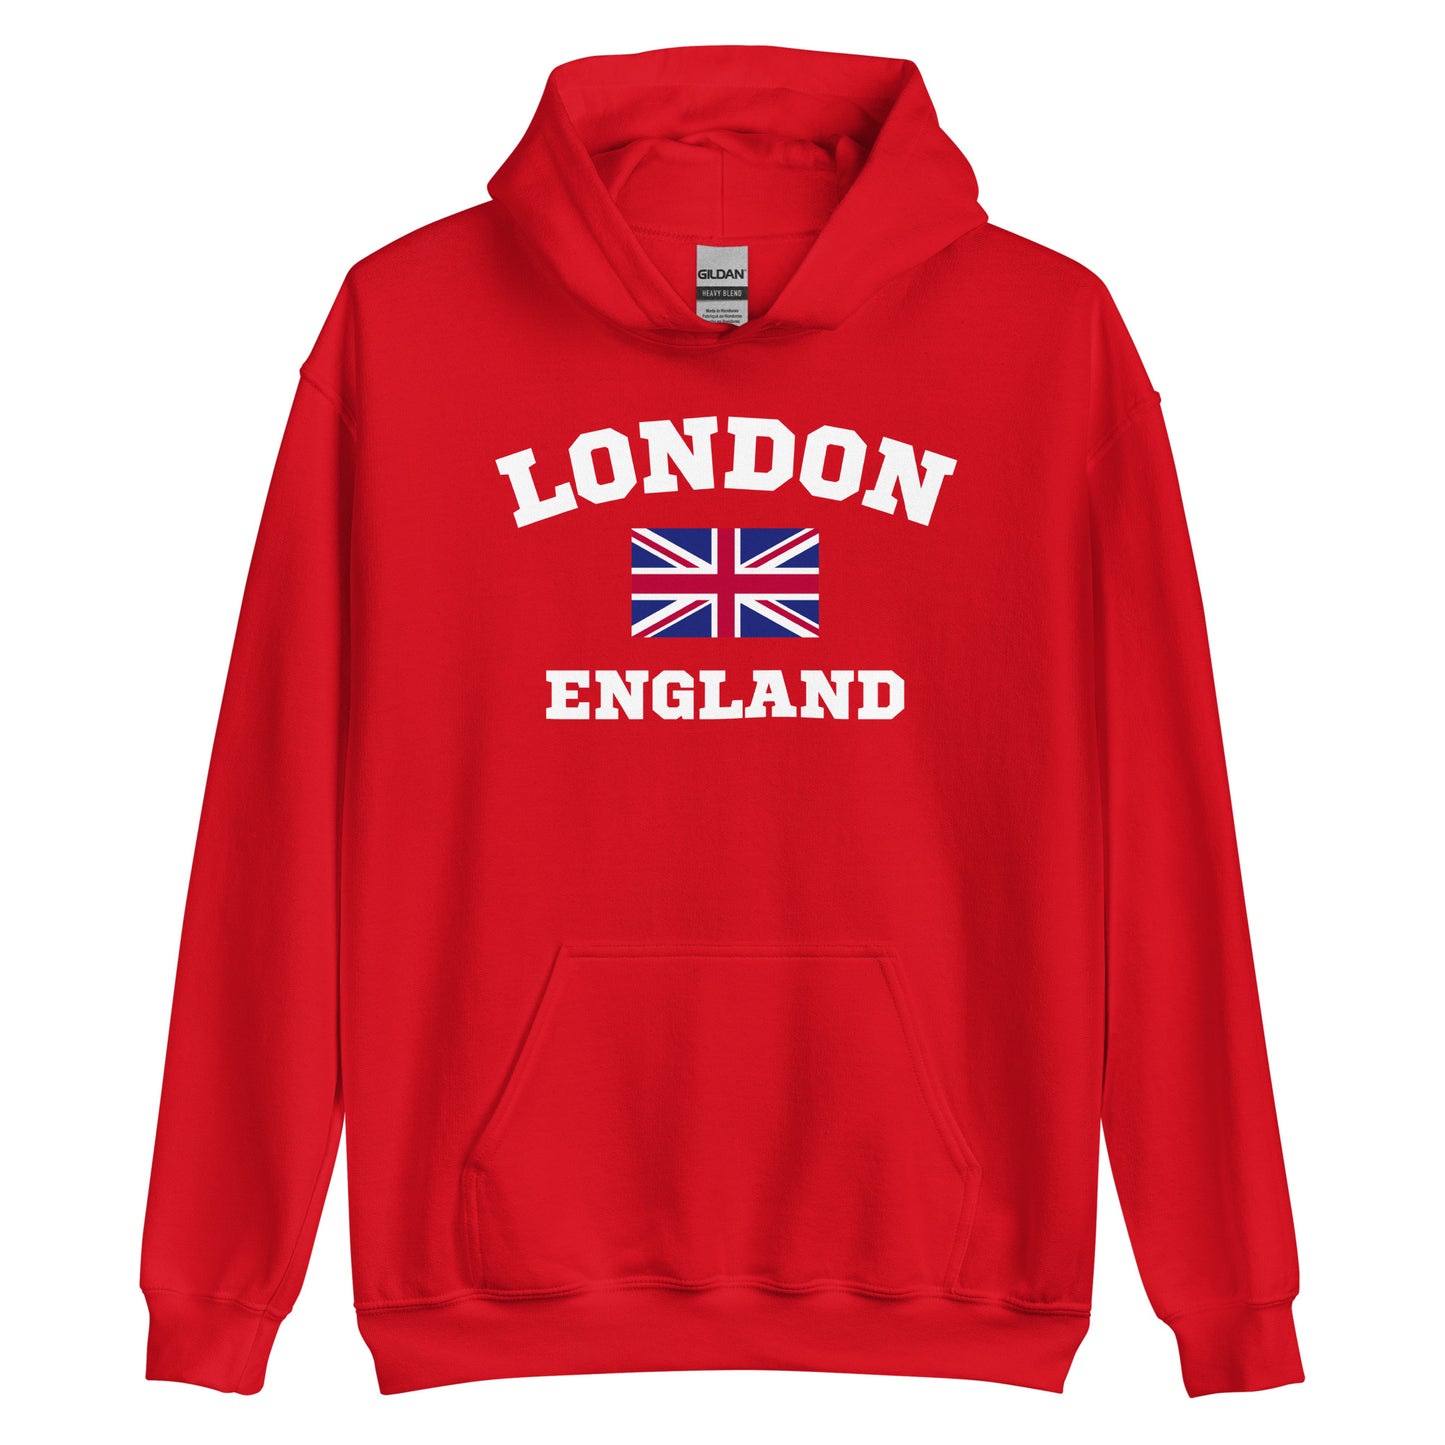 London England Hoodie - UK Flag Aesthetic Sweatshirt